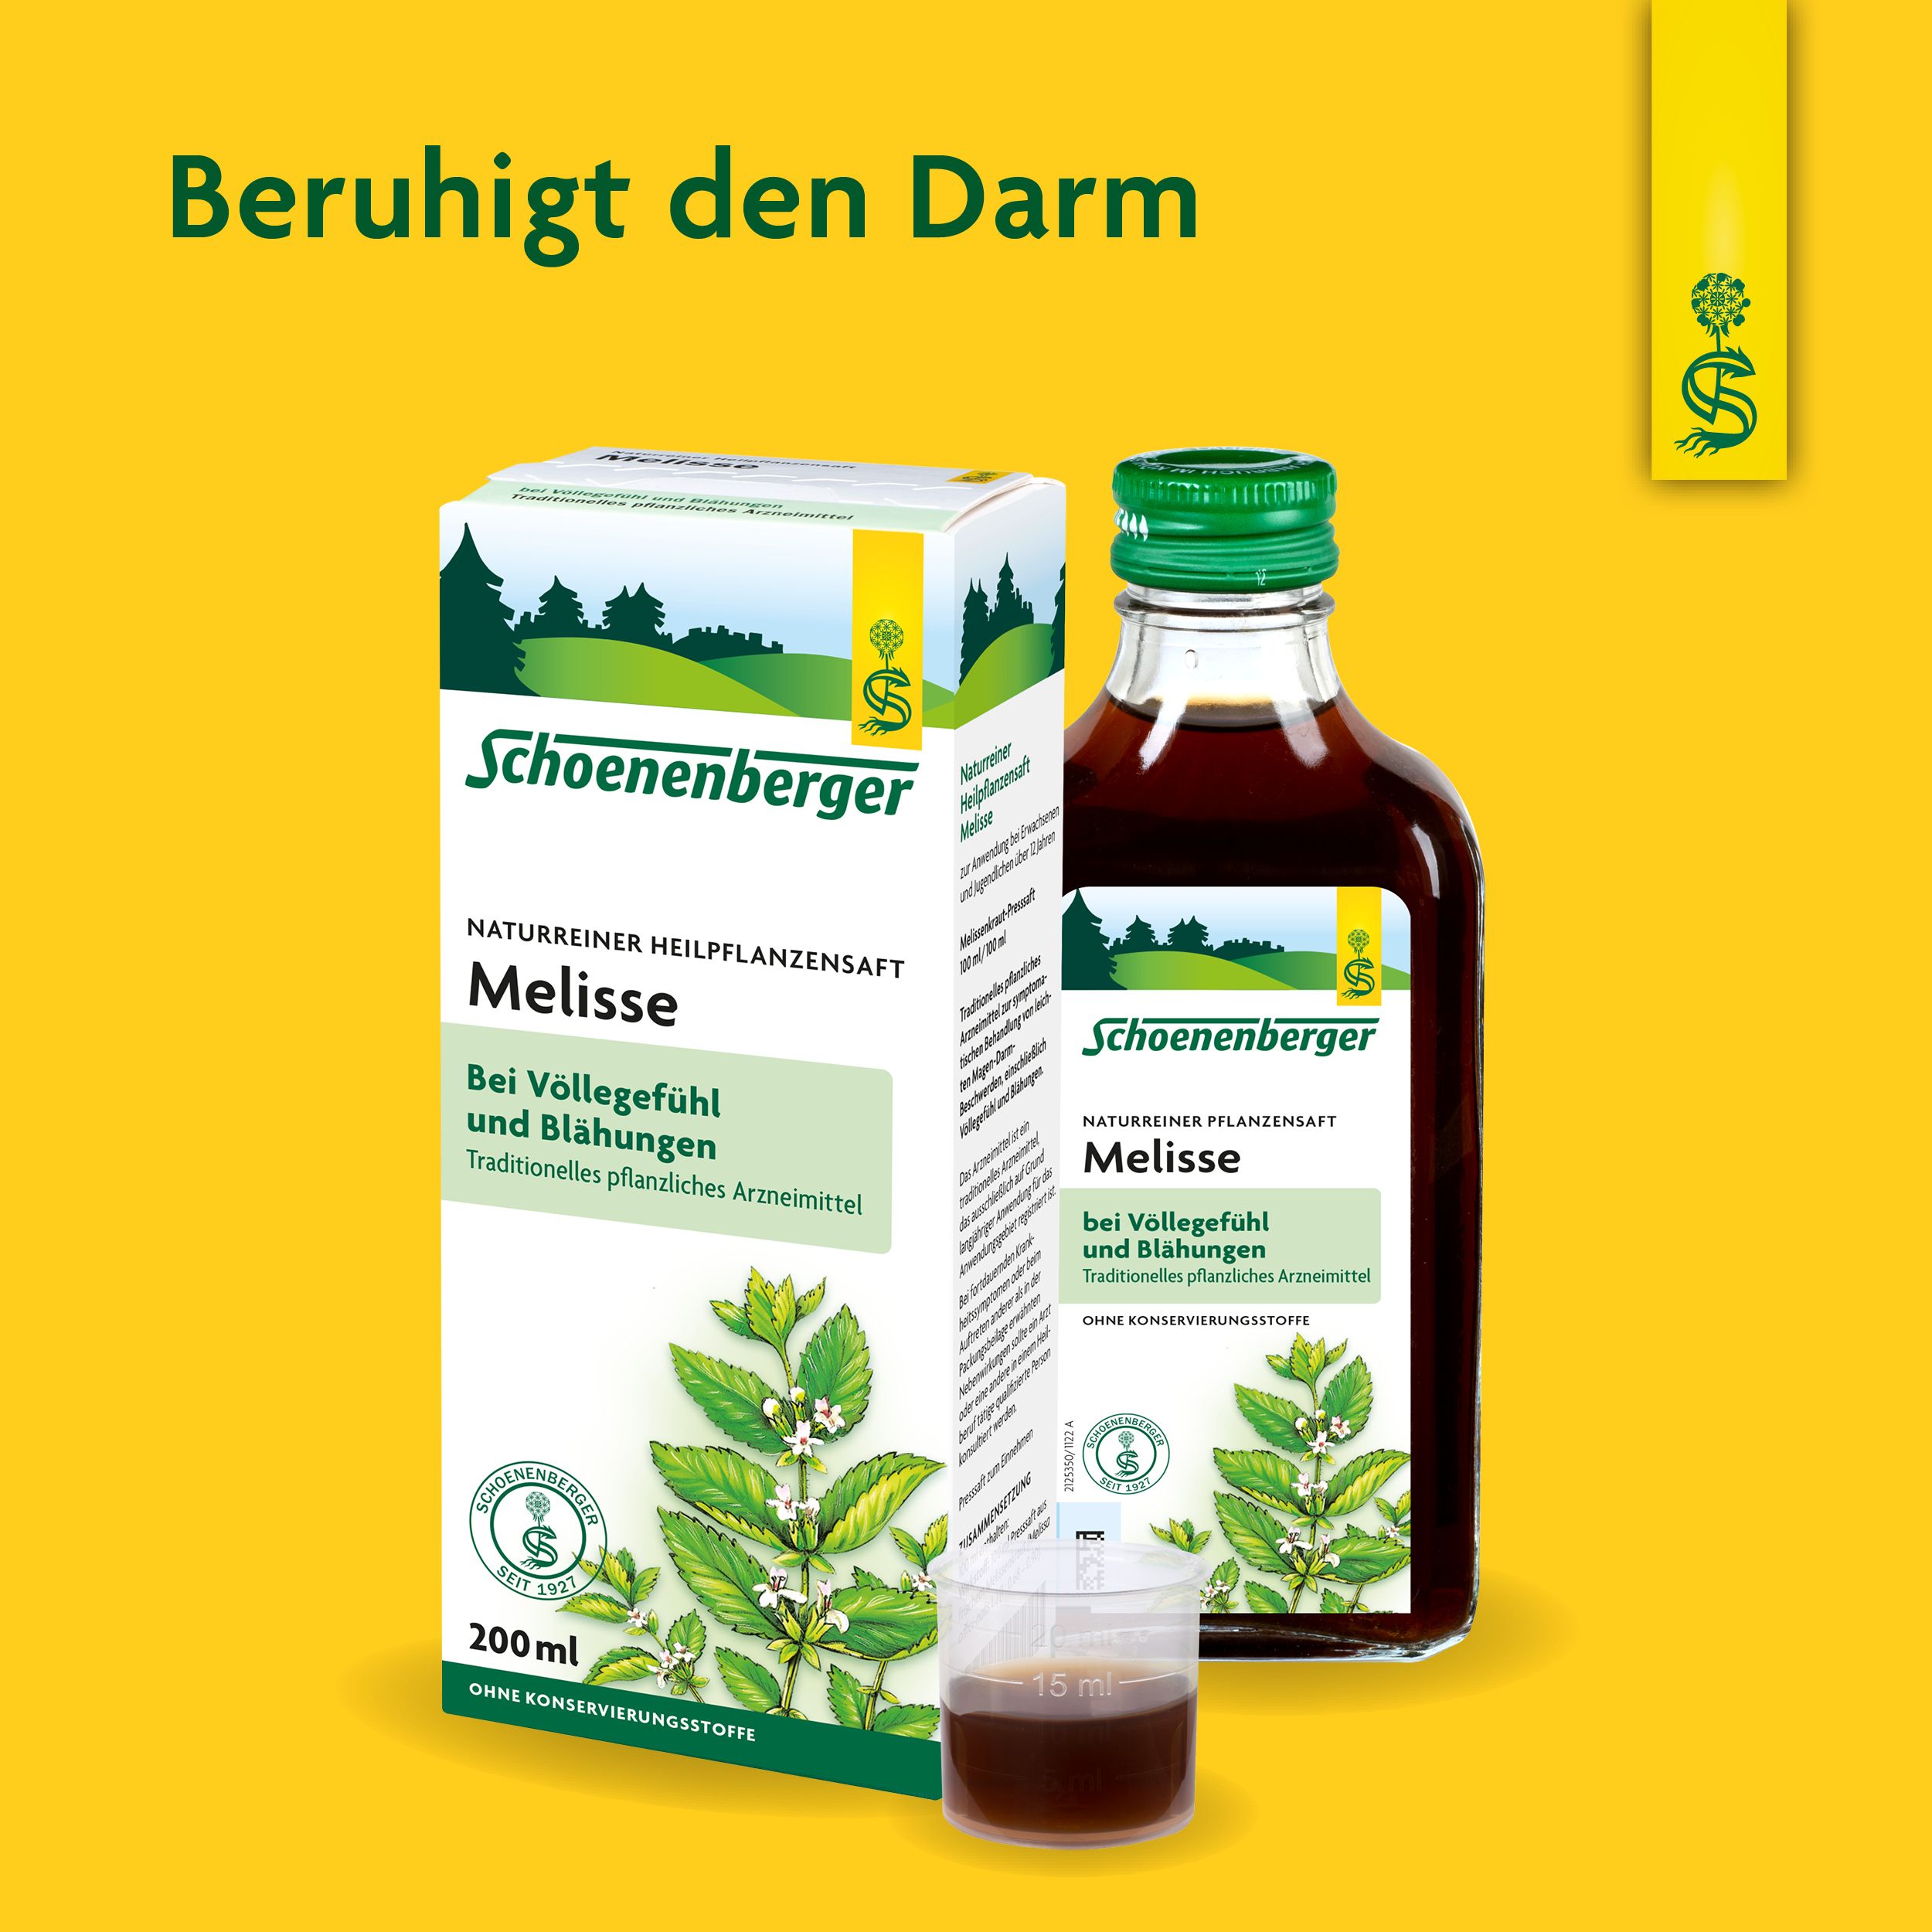 Schoenenberger® naturreiner Heilpflanzensaft Melisse